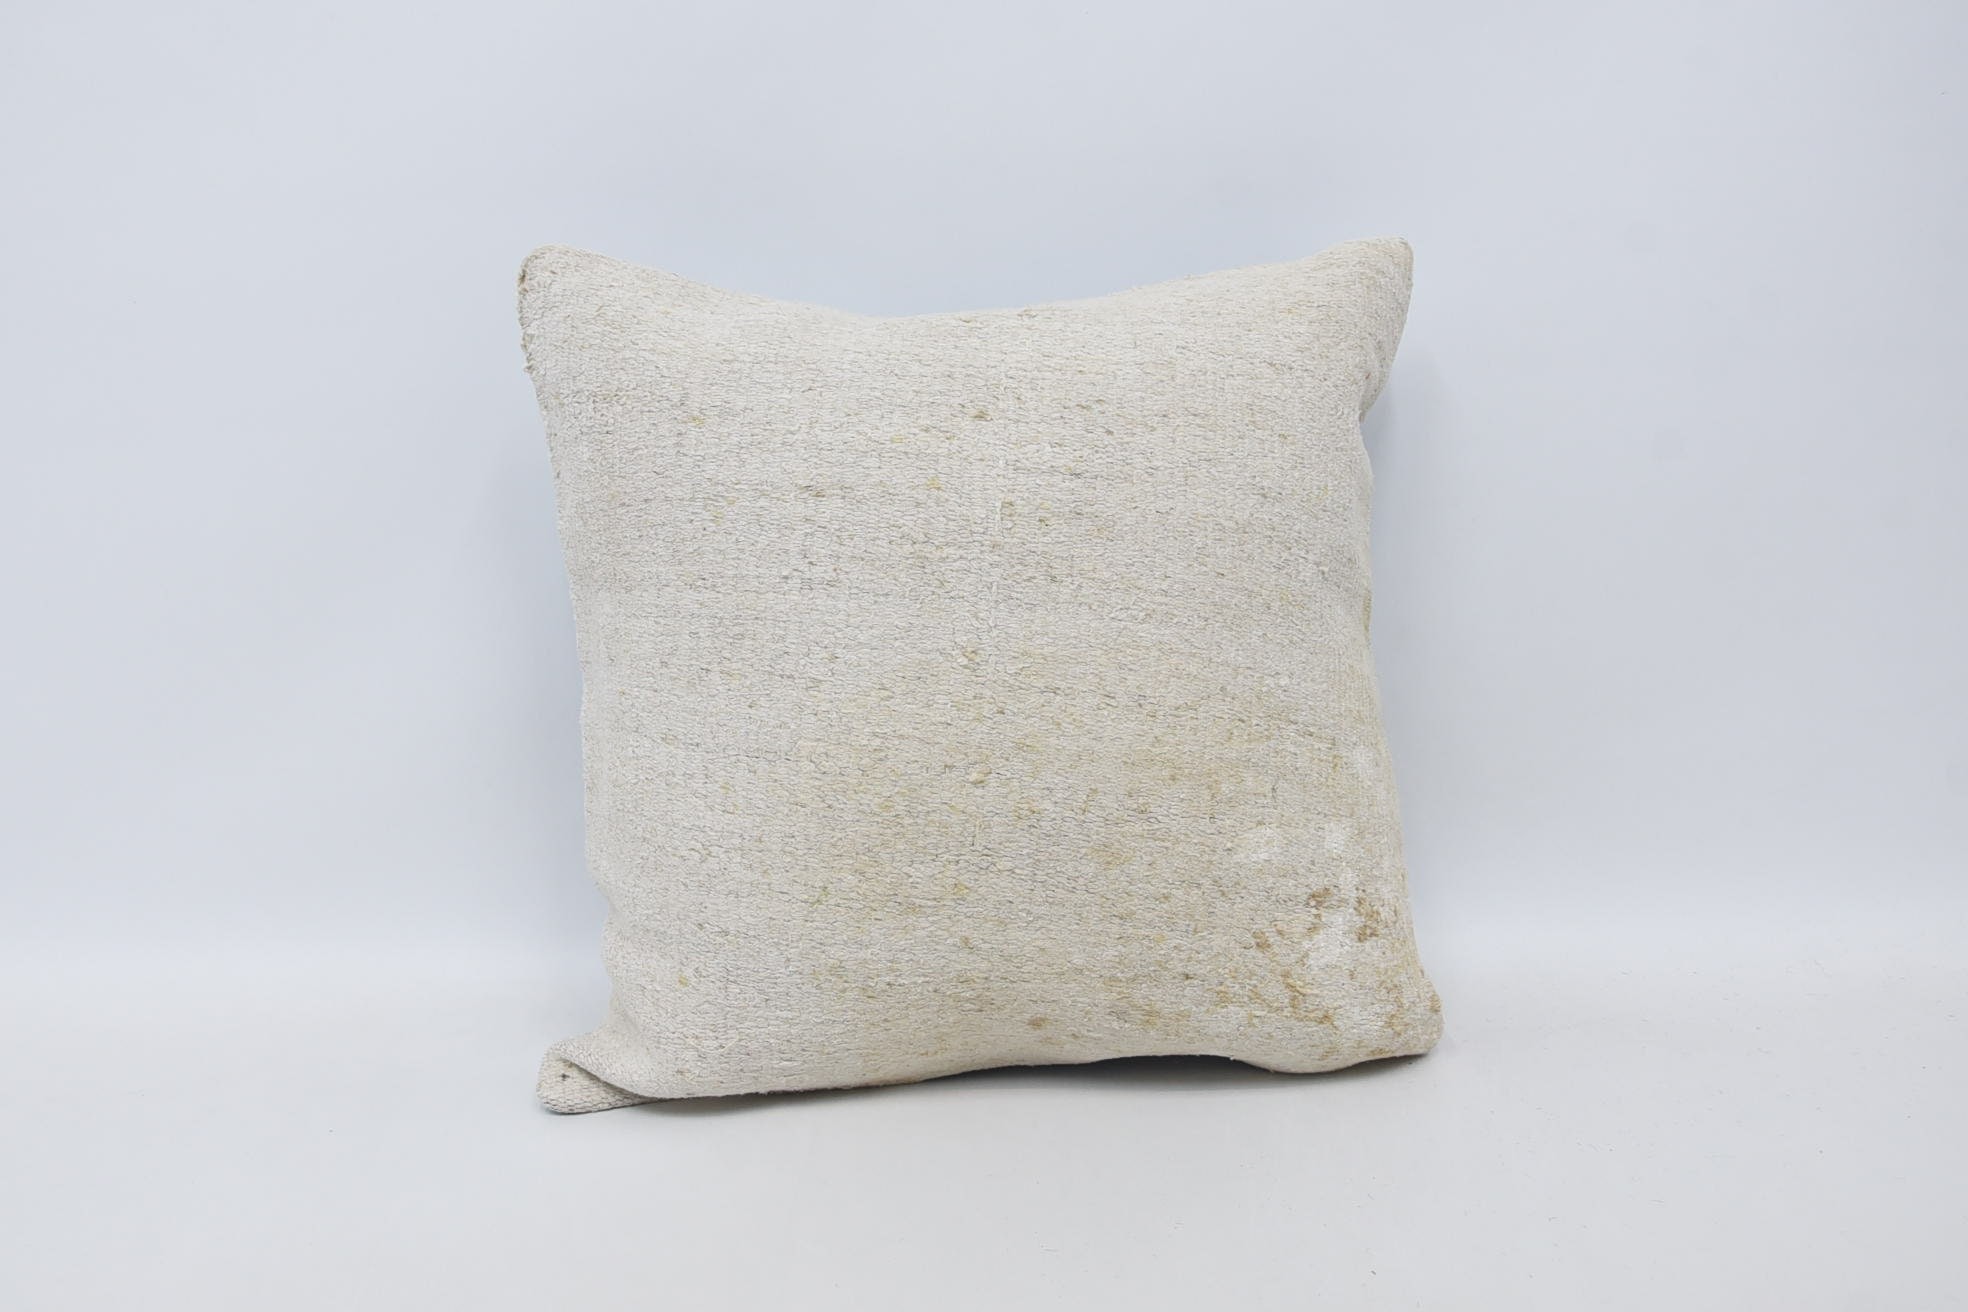 Patio Cushion Case, Vintage Pillow, Outdoor Bolster Pillow Case, Turkish Pillow, Throw Kilim Pillow, 18"x18" White Cushion Case